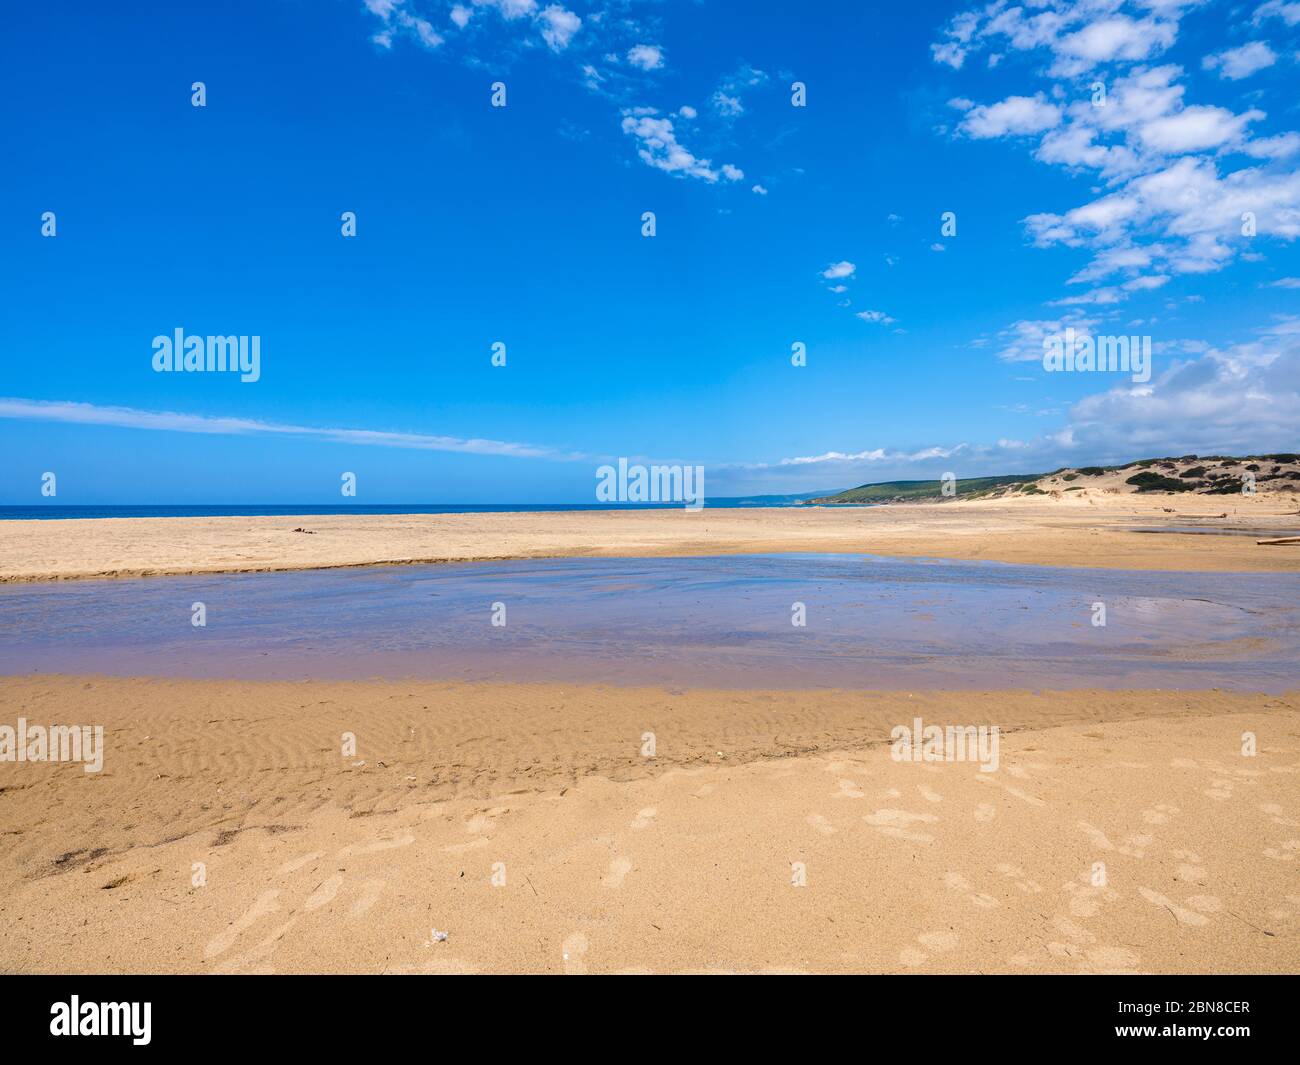 La inmensa y maravillosa playa de Piscinas con su panorama exótico, cerca de imponentes y sinuosas dunas de fina, cálida arena dorada Foto de stock